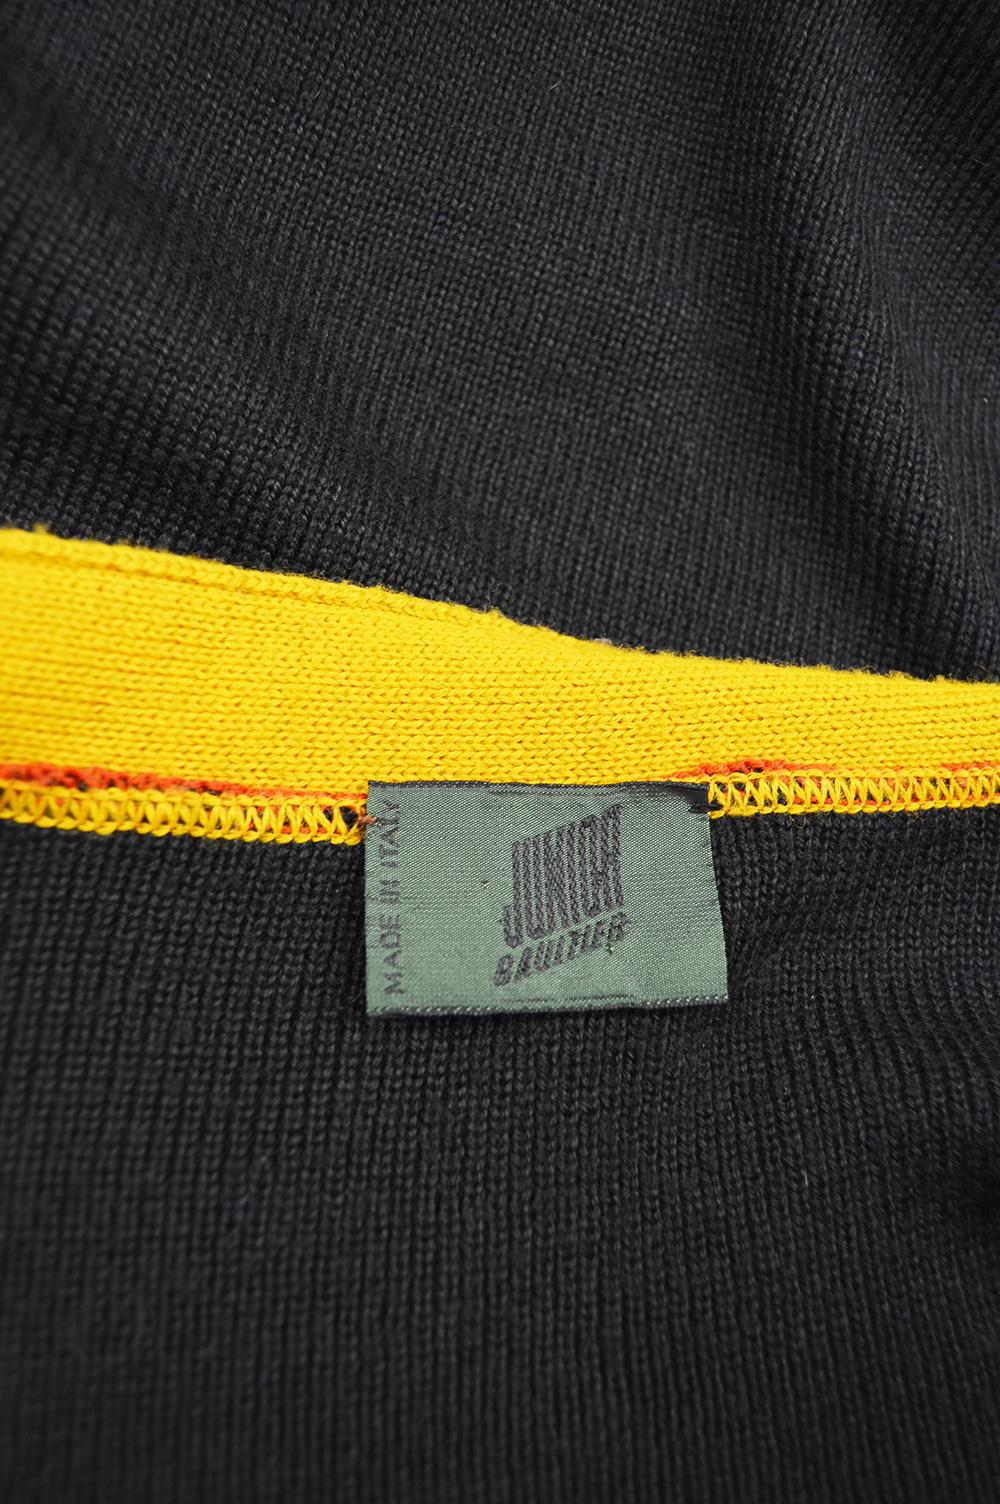 Jean Paul Gaultier Herren Vintage Farbe Block Zip Up Cardigan Pullover:: 1990er Jahre 5